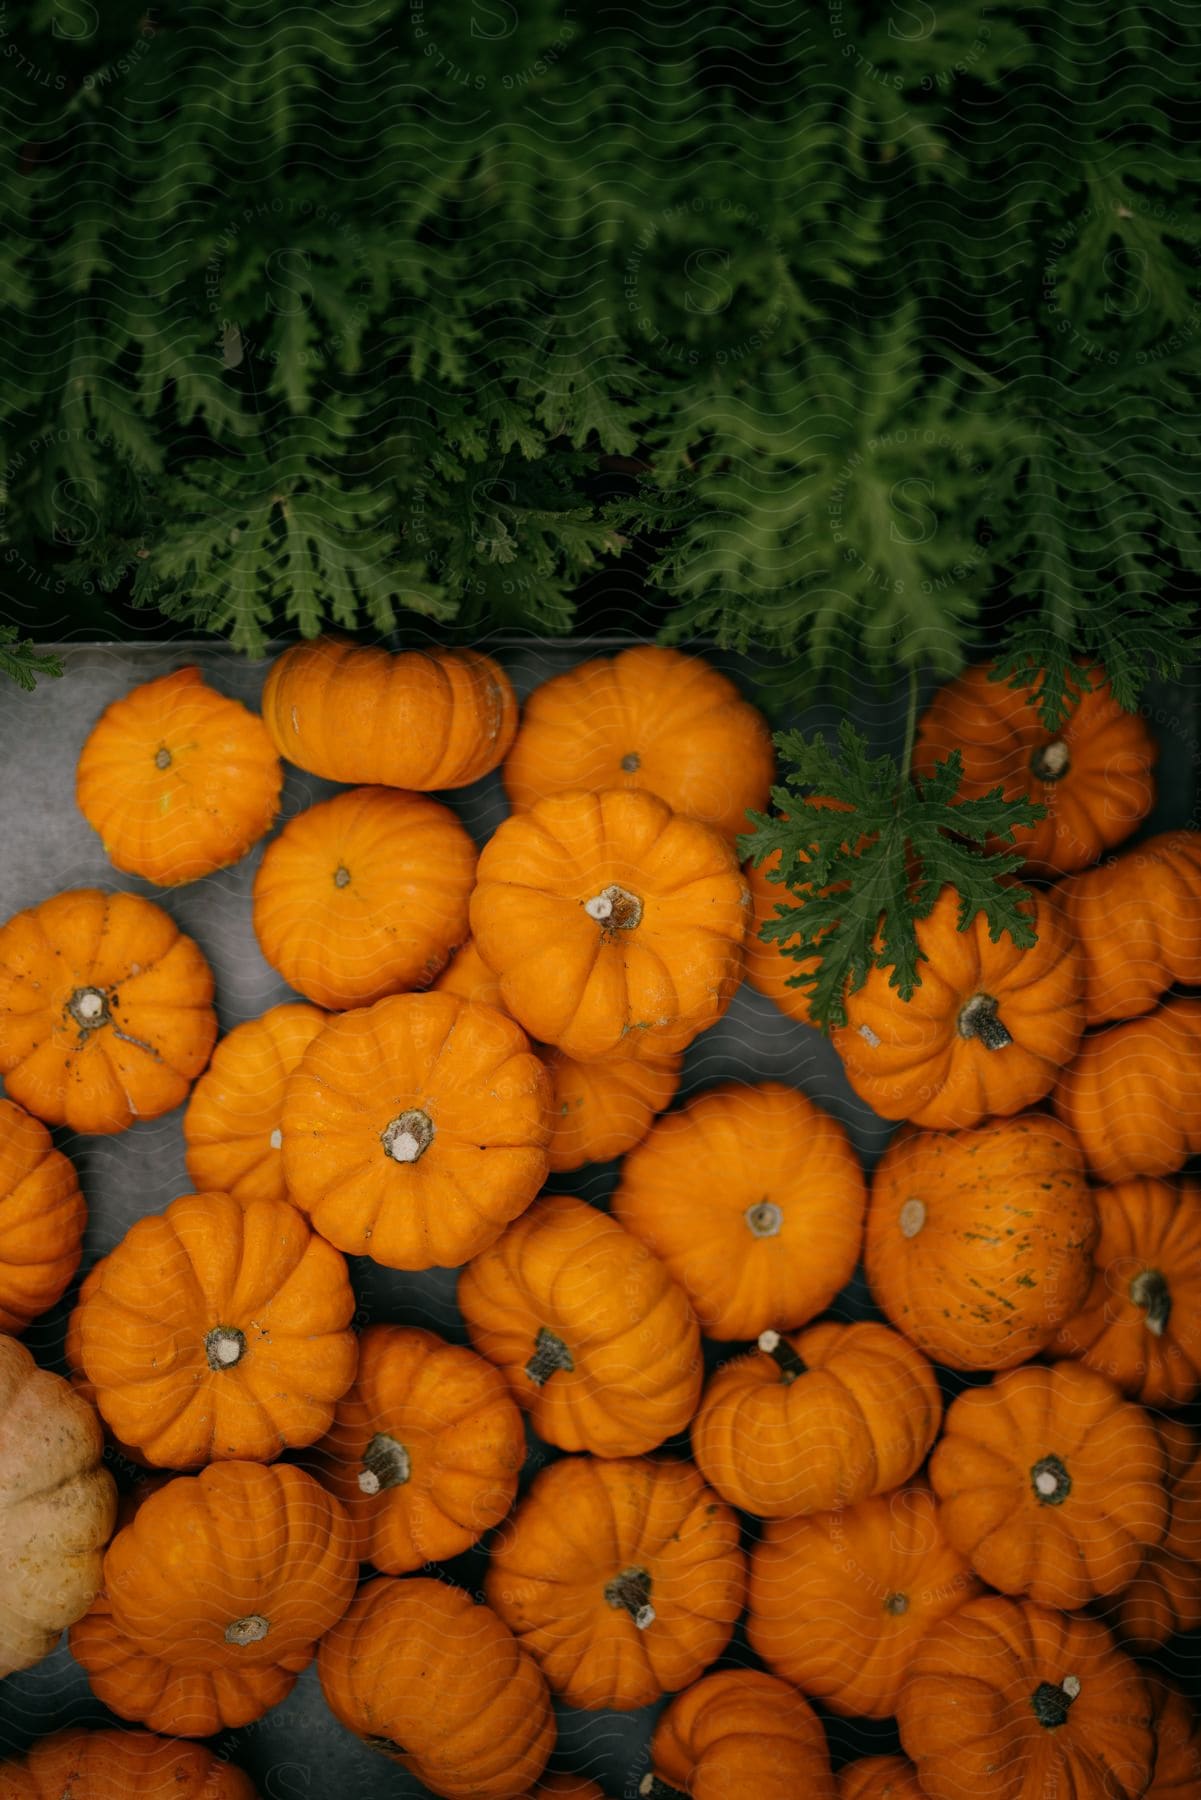 A couple dozen small pumpkins arranged on a table.